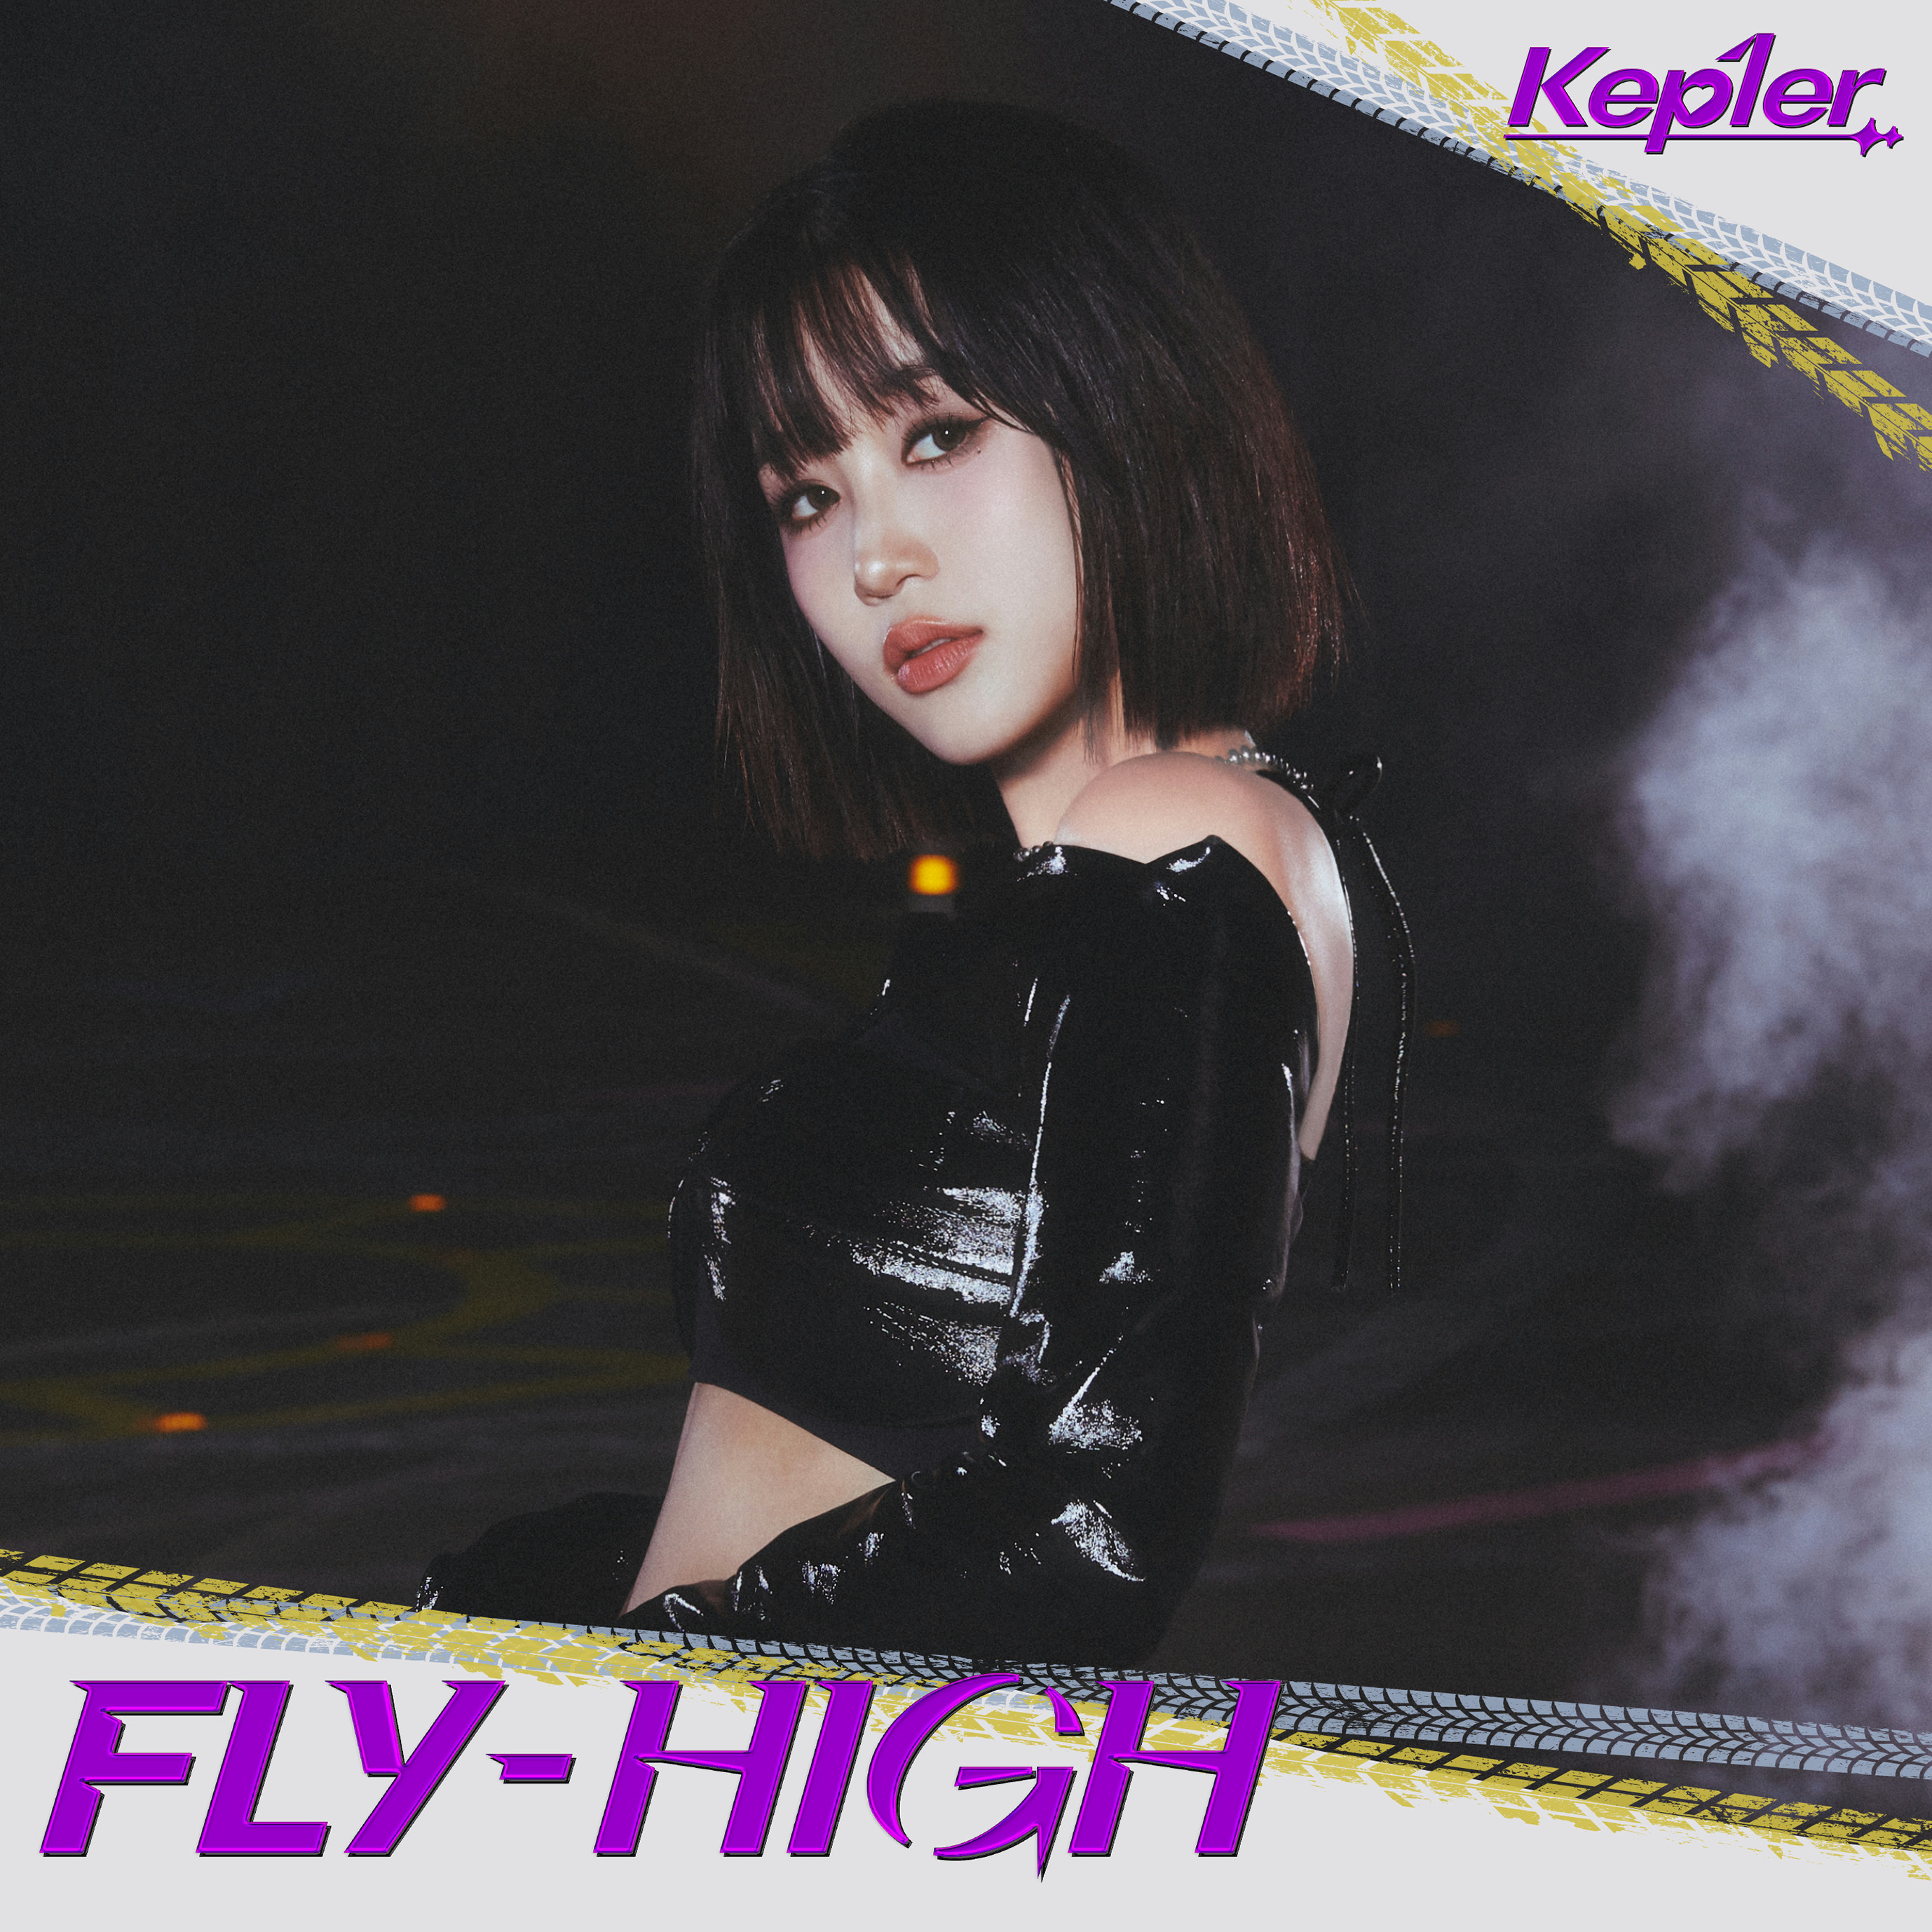 FLY-HIGH>【Kep1ian盤 (HIKARU ver.)】 - 【Kep1ian Japan】Kep1er